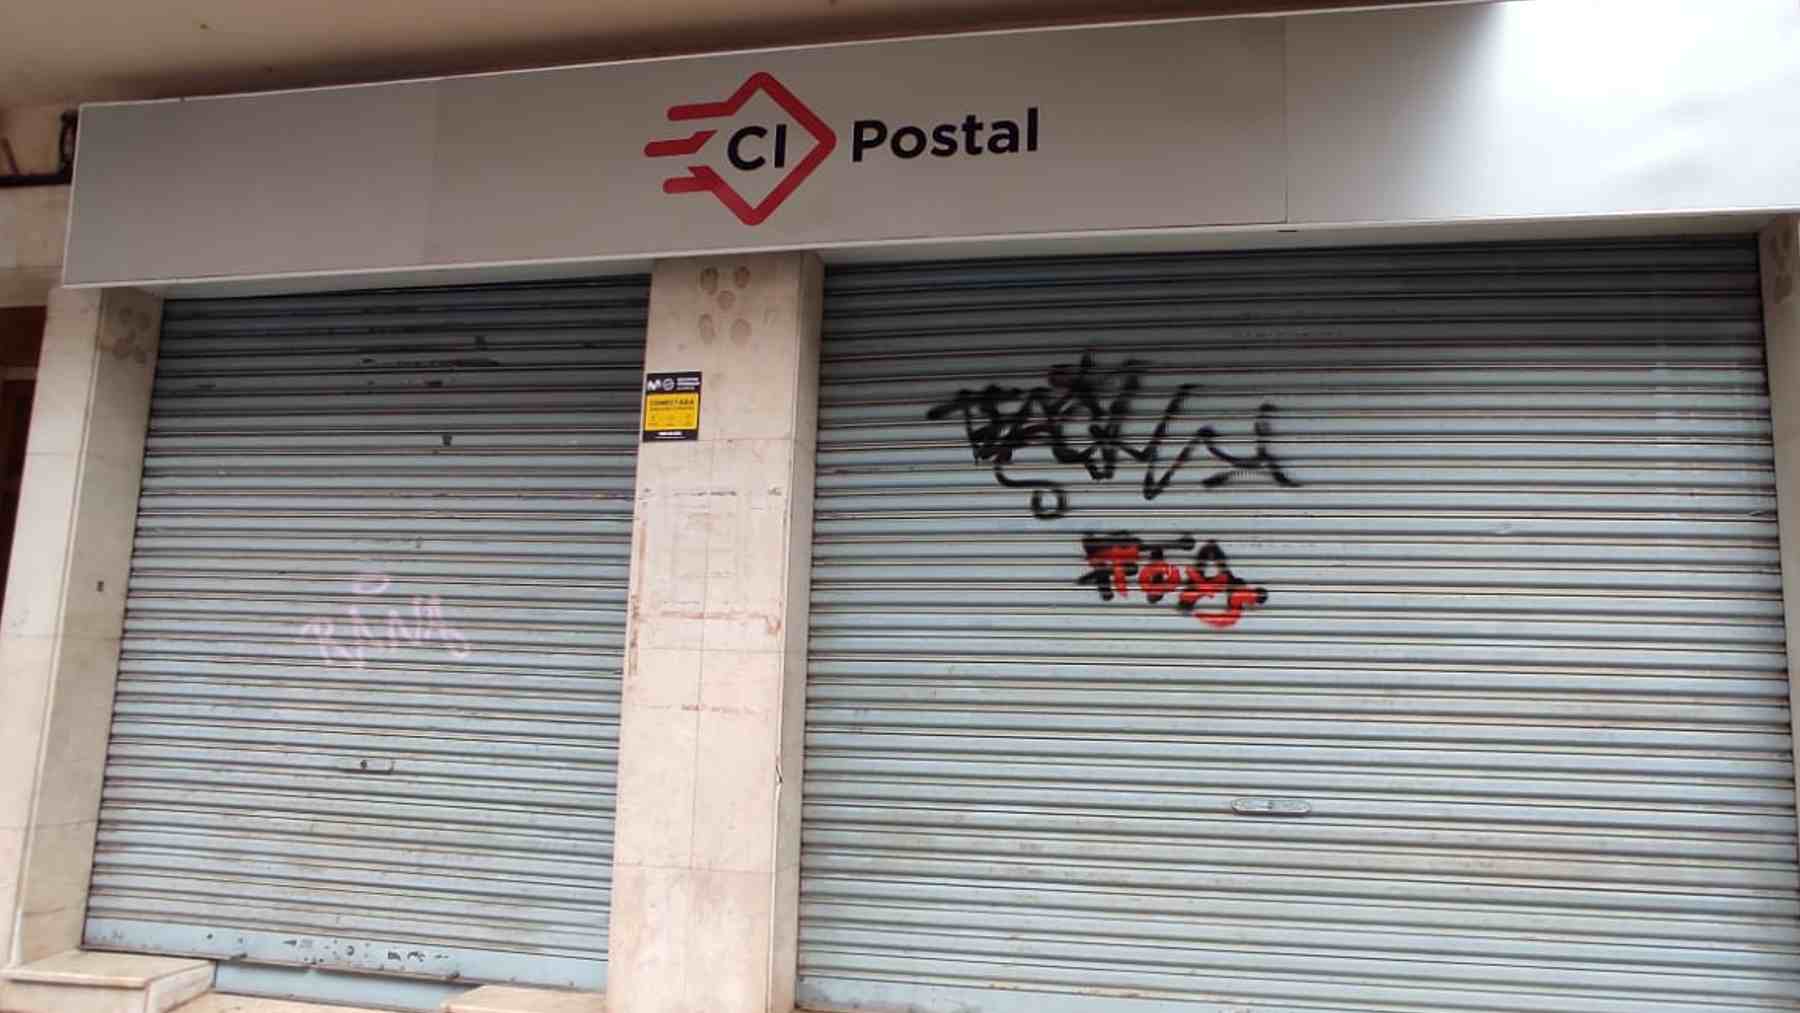 Oficina de la empresa concesionaria de las notificaciones de multas del Ayuntamiento de Palma, CI Postal.